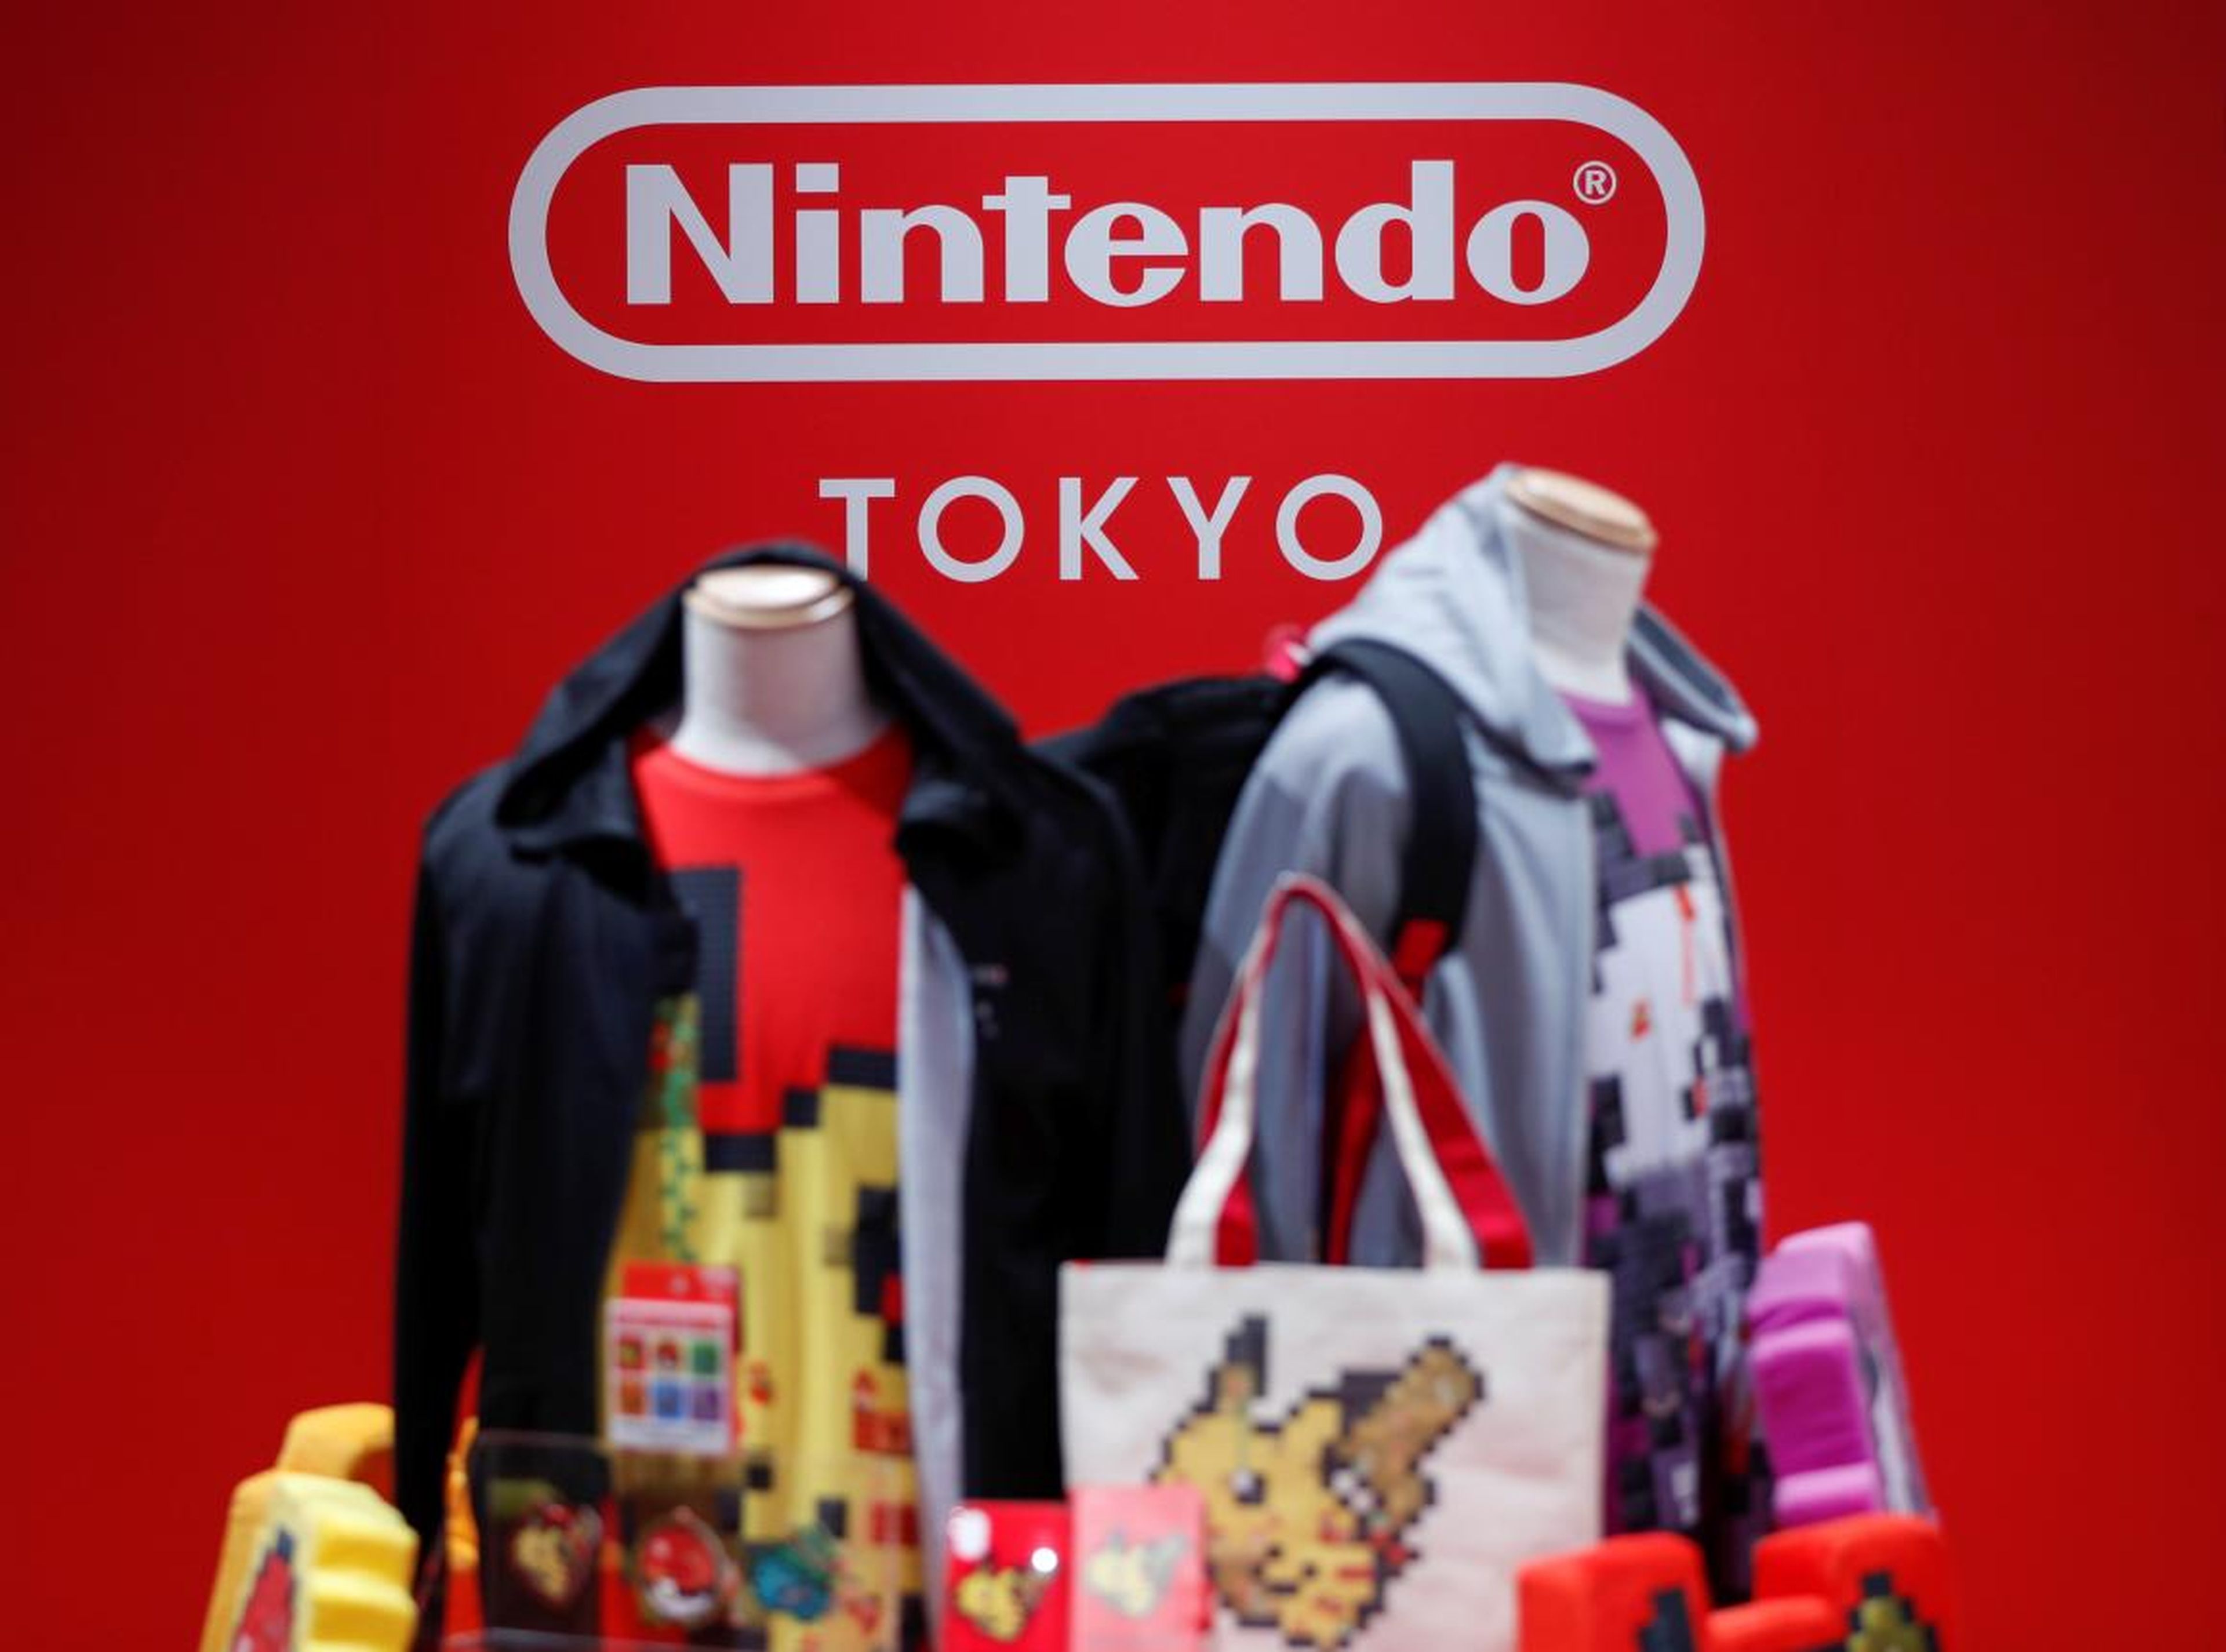 Nintendo Tokyo will officially open on November 22.